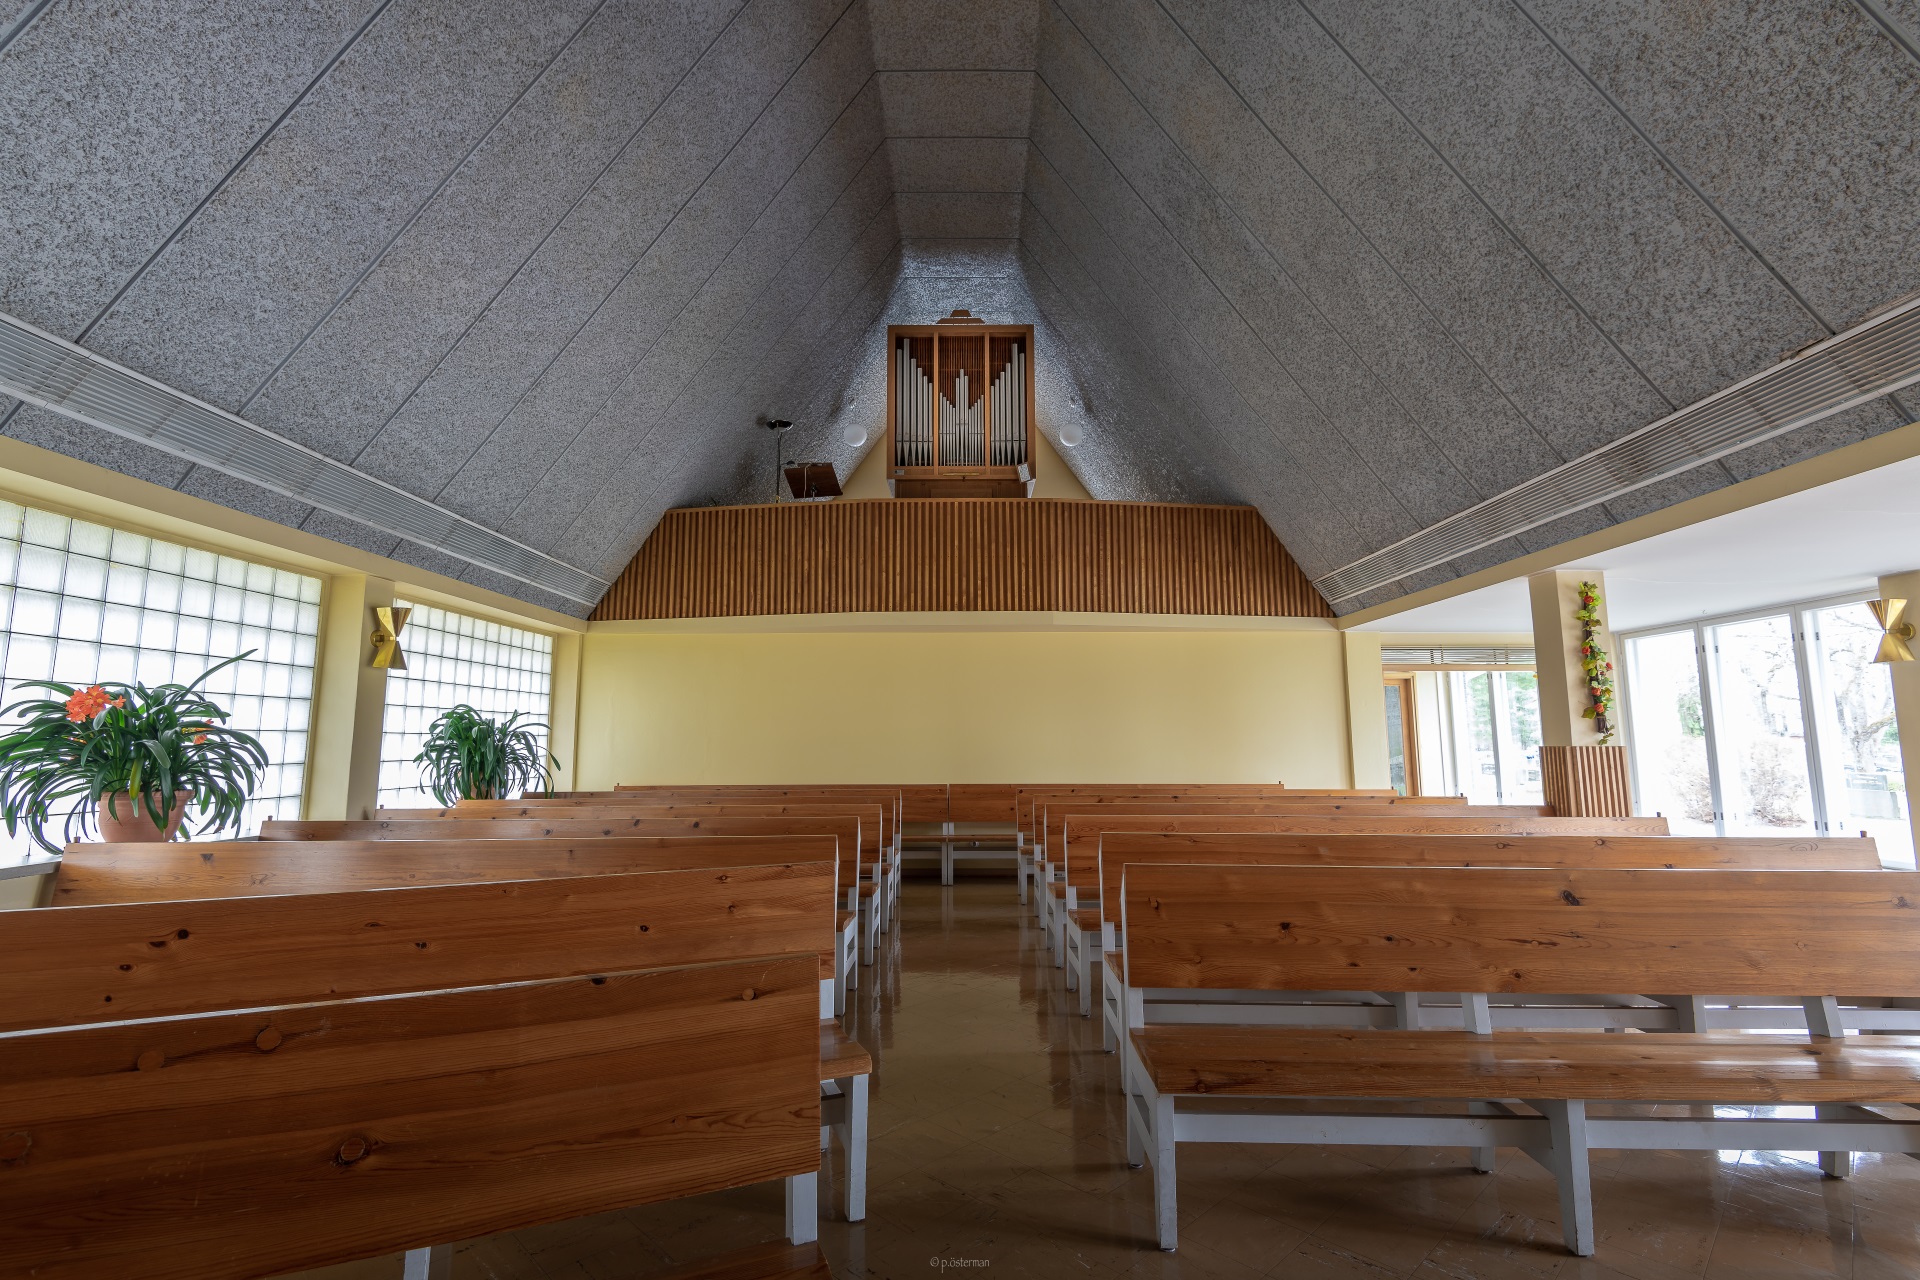 Lammin seurakunnan siunauskappeli sisältä, kuvassa näkyy urut